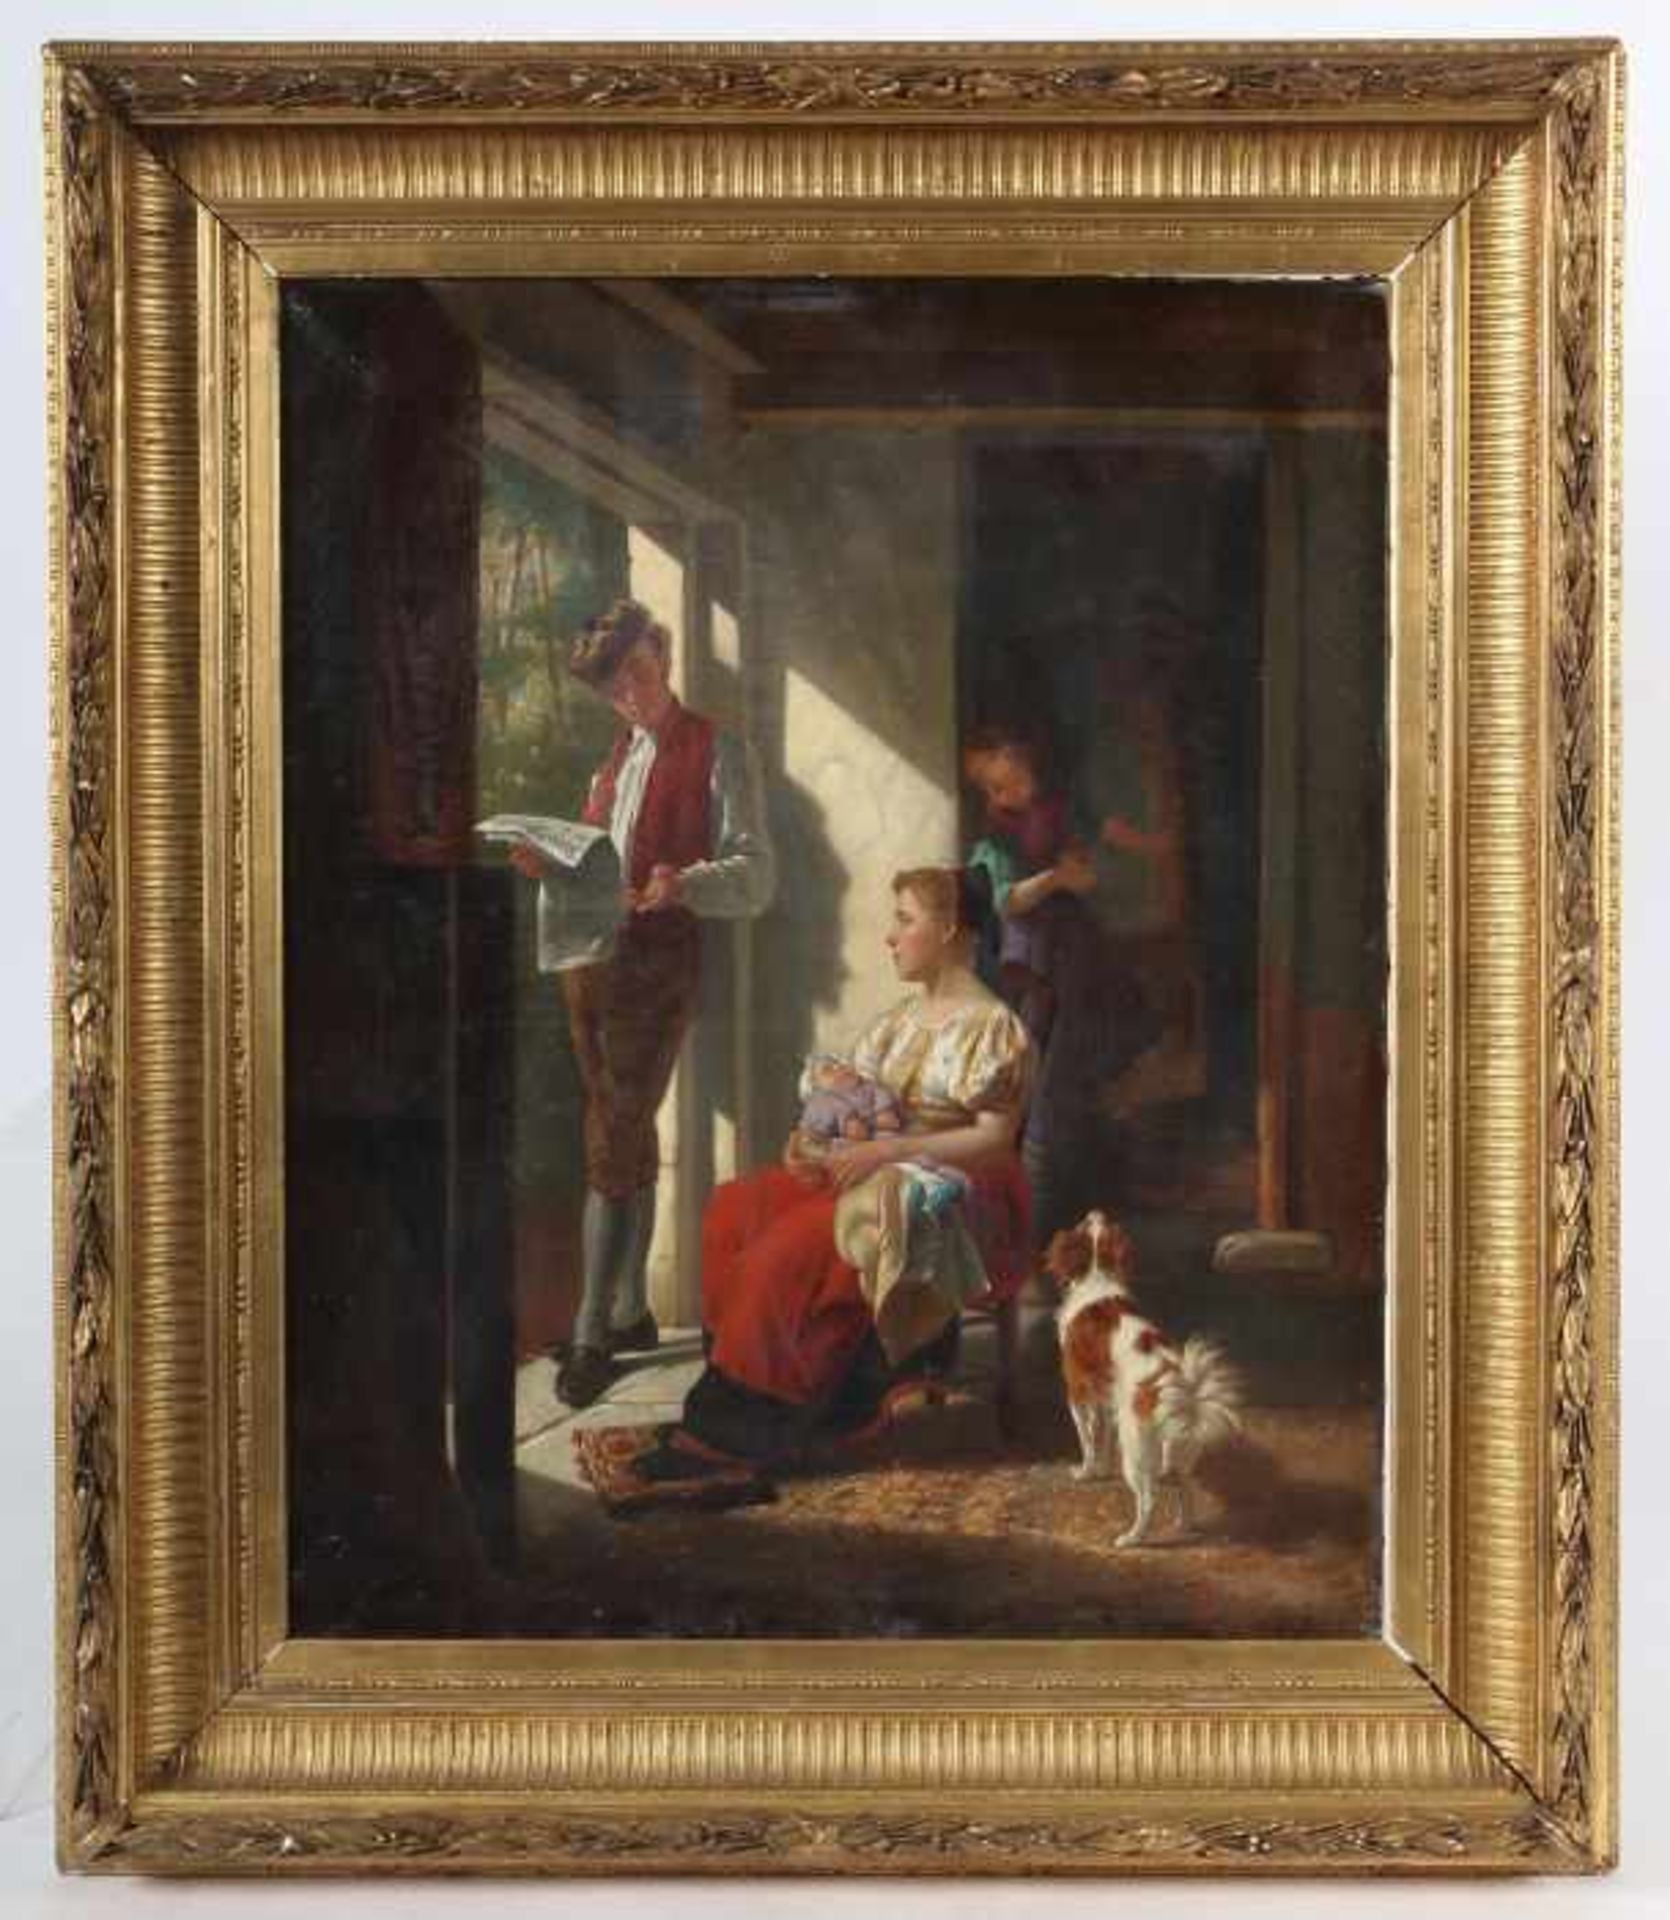 Gérard, ThéodoreGent 1829 - 1895 Laken, belgischer Maler. "Familienidyll", realistische Szene - Bild 2 aus 4